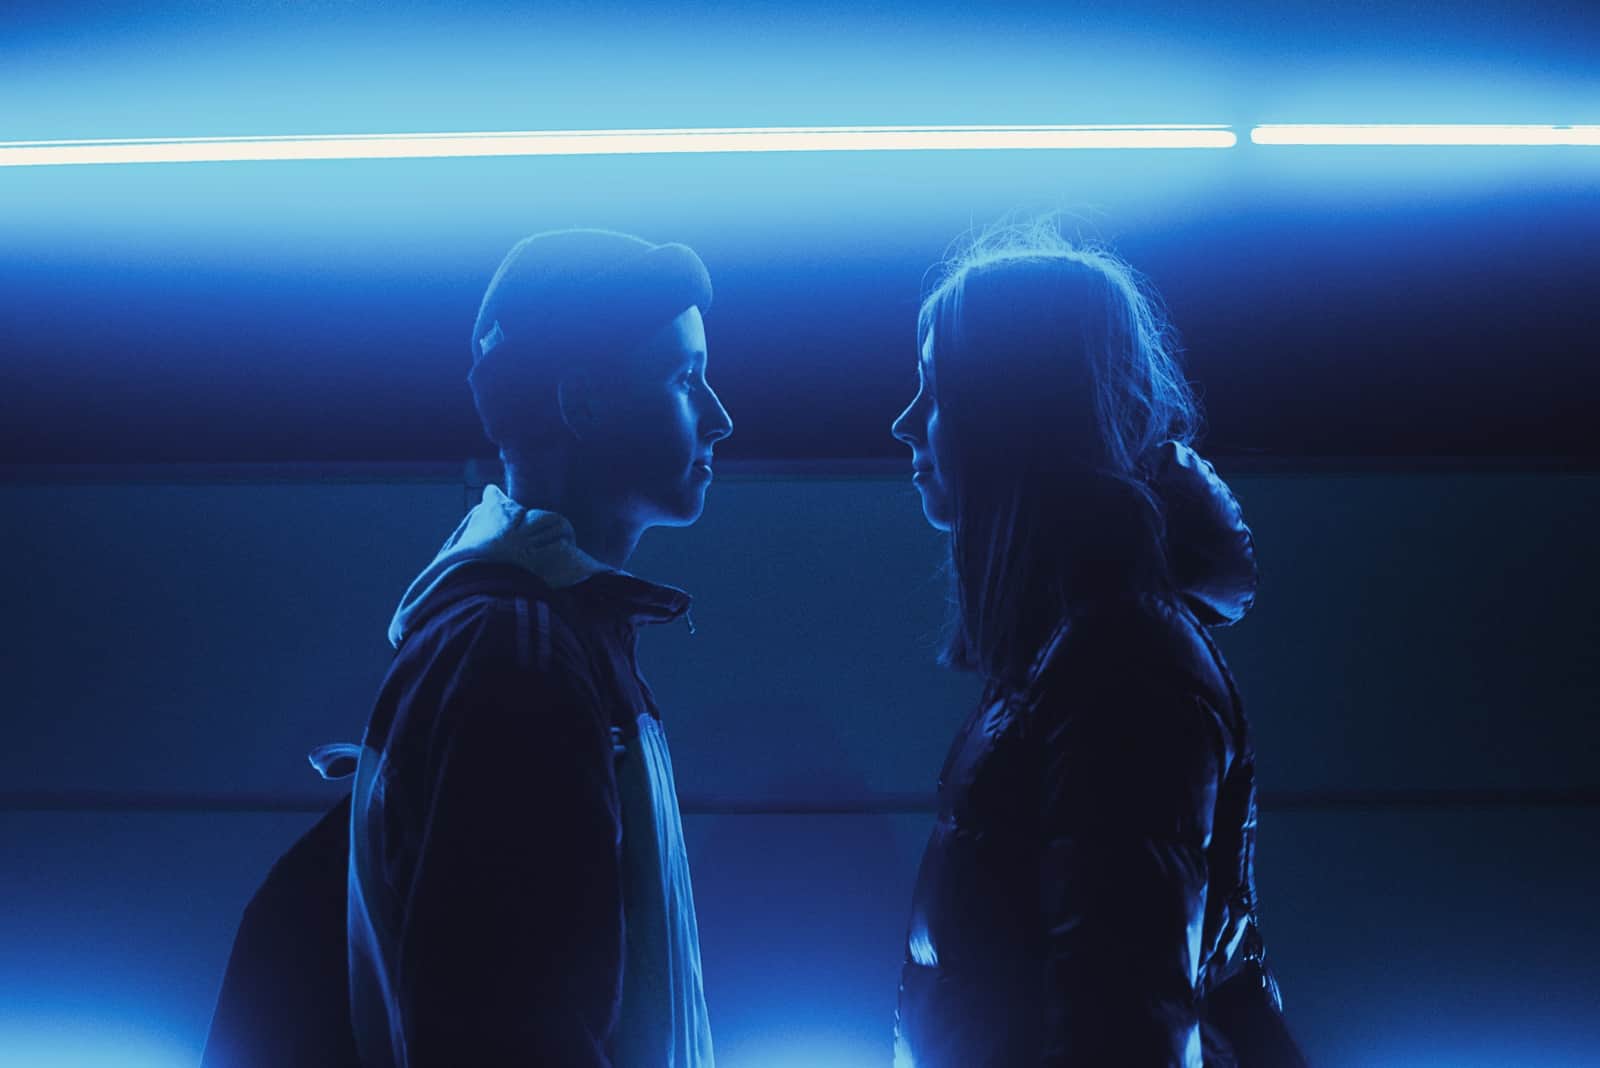 Un homme et une femme se regardent dans les yeux en se tenant près d'un néon